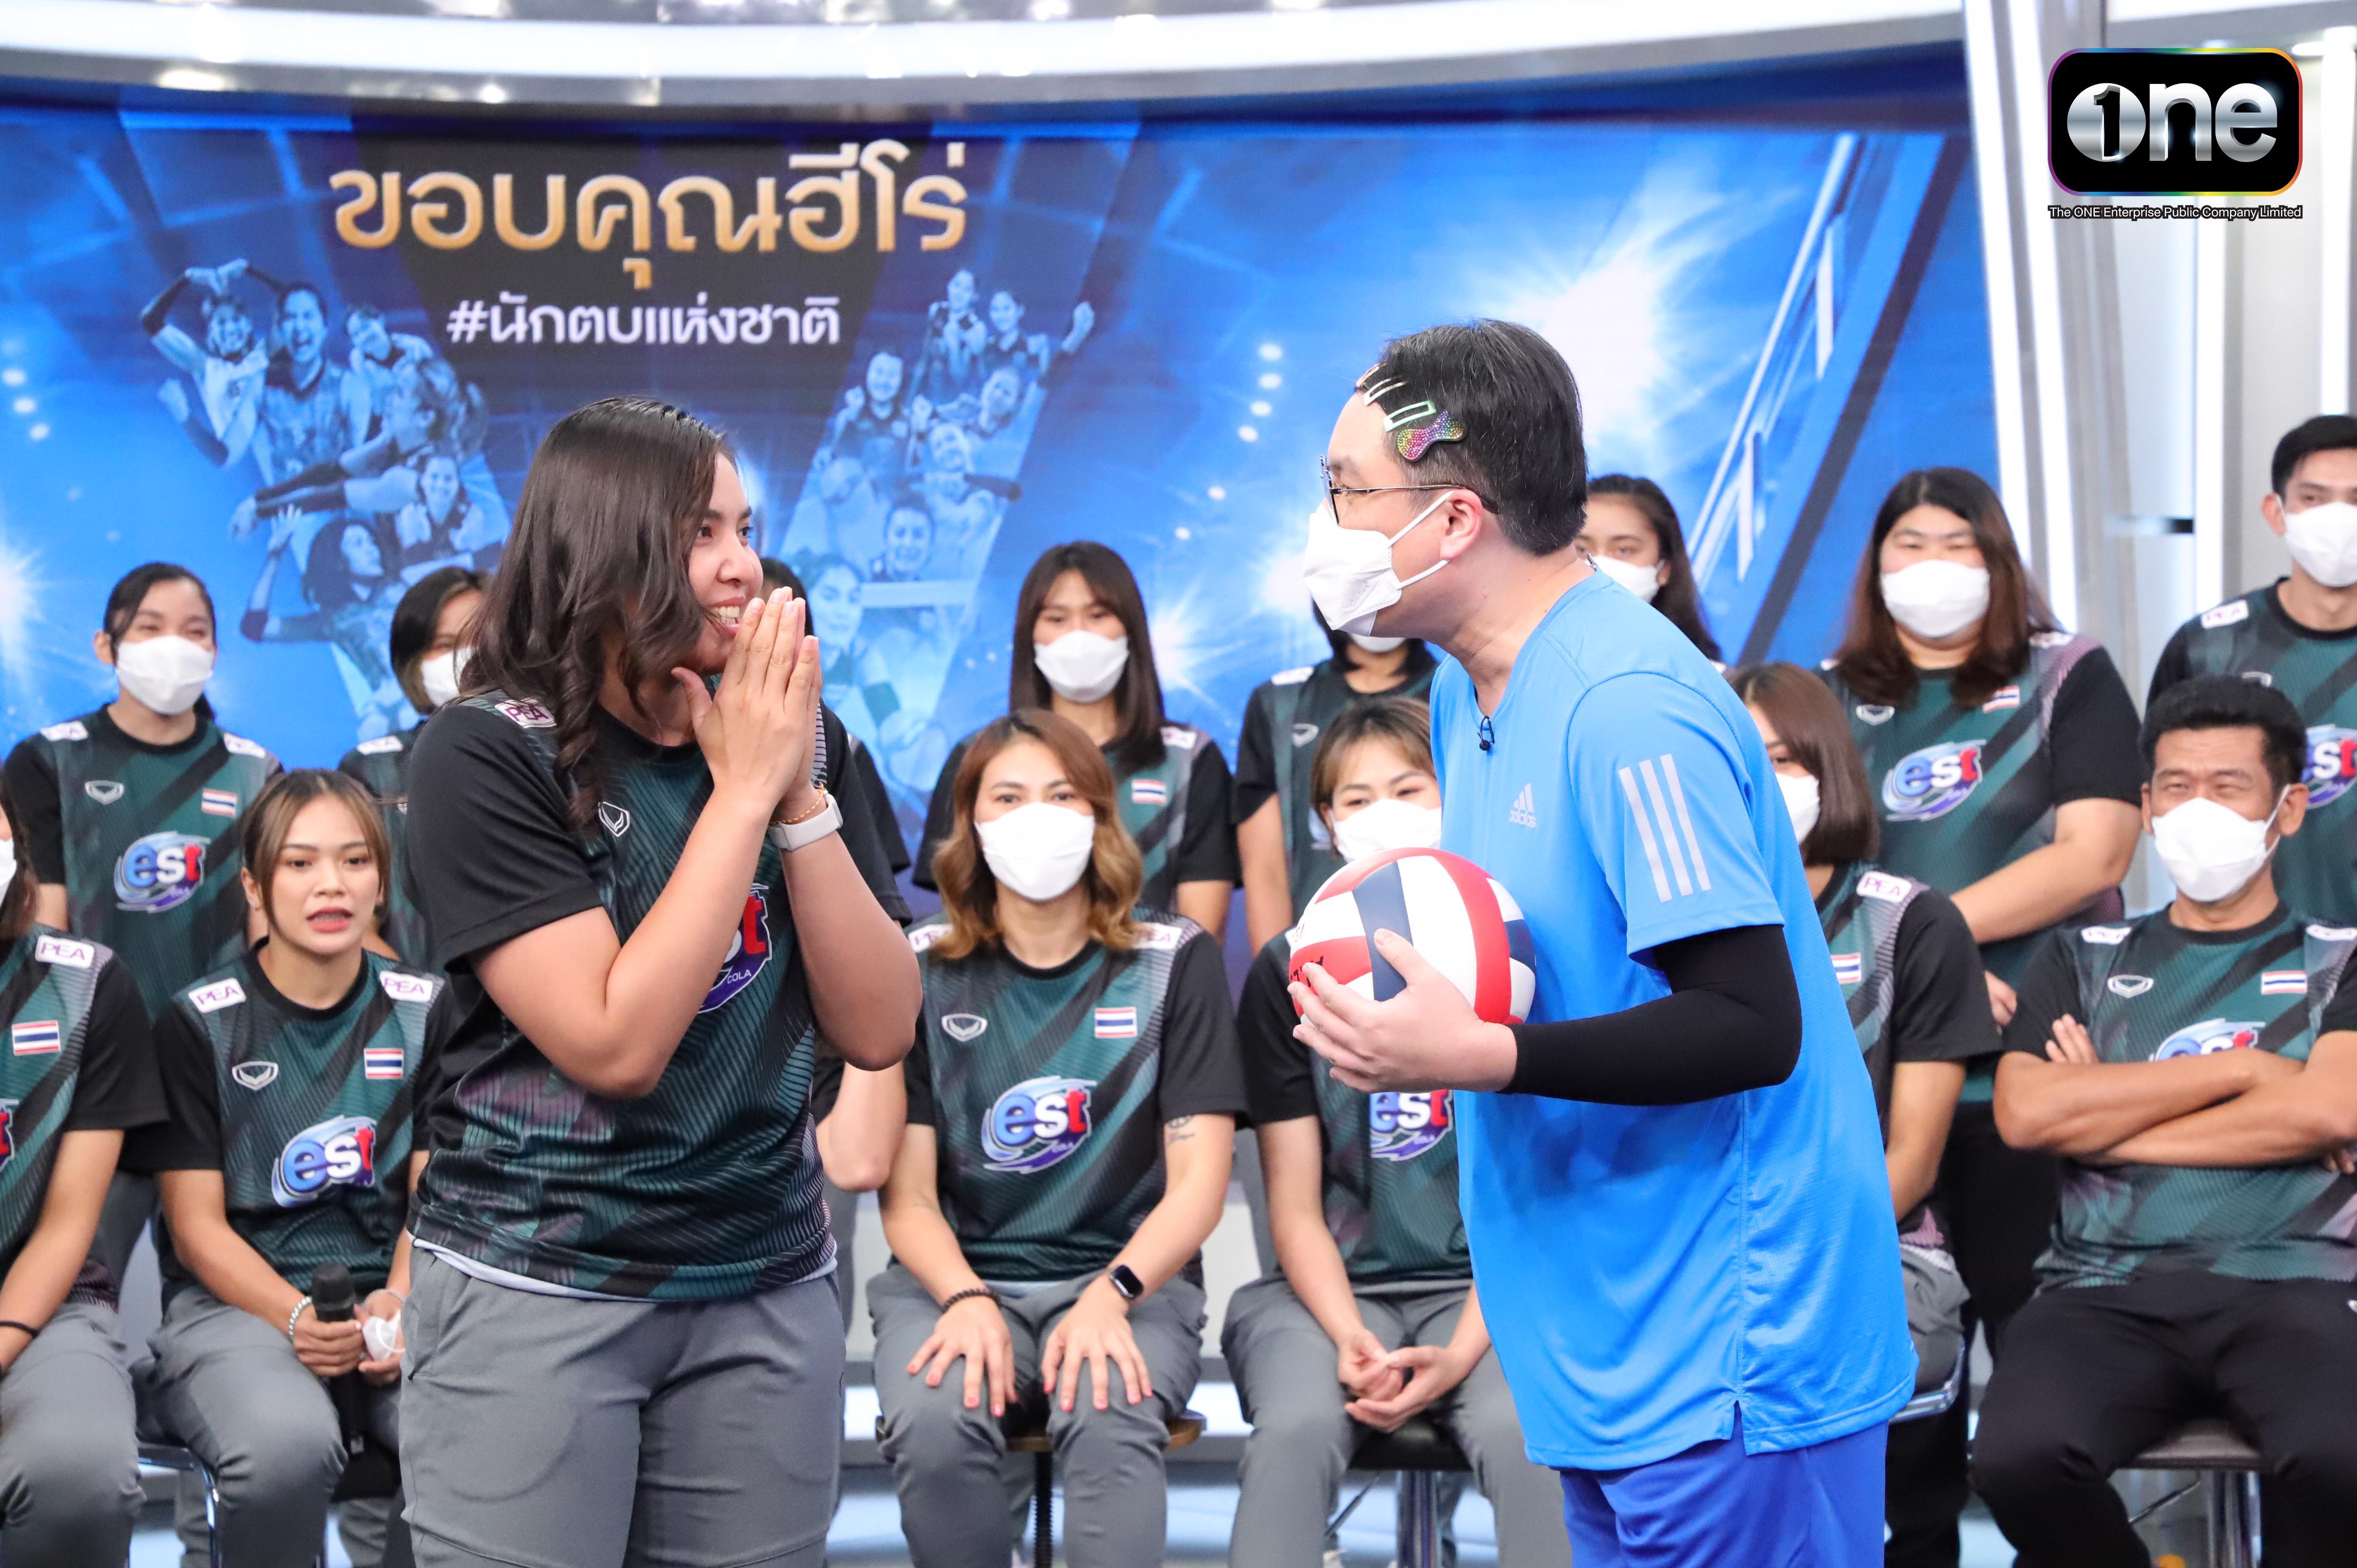 ขอบคุณฮีโร! “เดอะ วัน เอ็นเตอร์ไพรส์” จัดงานเลี้ยงแสดงความยินดีให้นักกีฬาวอลเลย์บอลหญิงทีมชาติไทย จัดเต็มดาราศิลปินจากช่องวัน 31 และ GMM TV อ่านข่าว GMM25 สนุกทุกวัน อยู่ด้วยกันทุกเวลา NEWSFEED